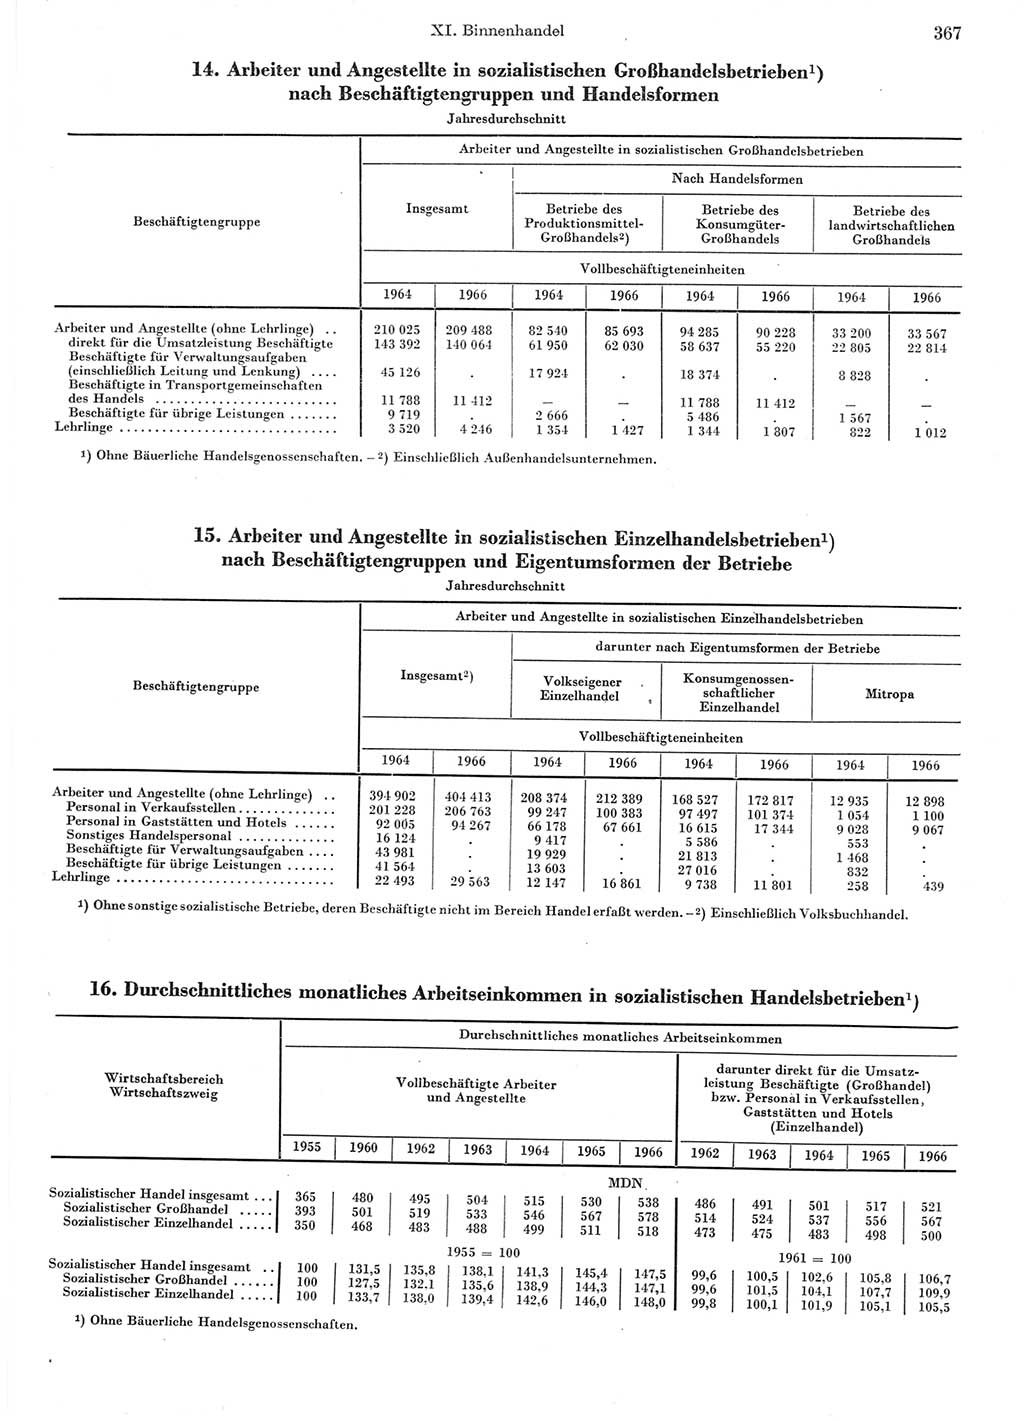 Statistisches Jahrbuch der Deutschen Demokratischen Republik (DDR) 1967, Seite 367 (Stat. Jb. DDR 1967, S. 367)